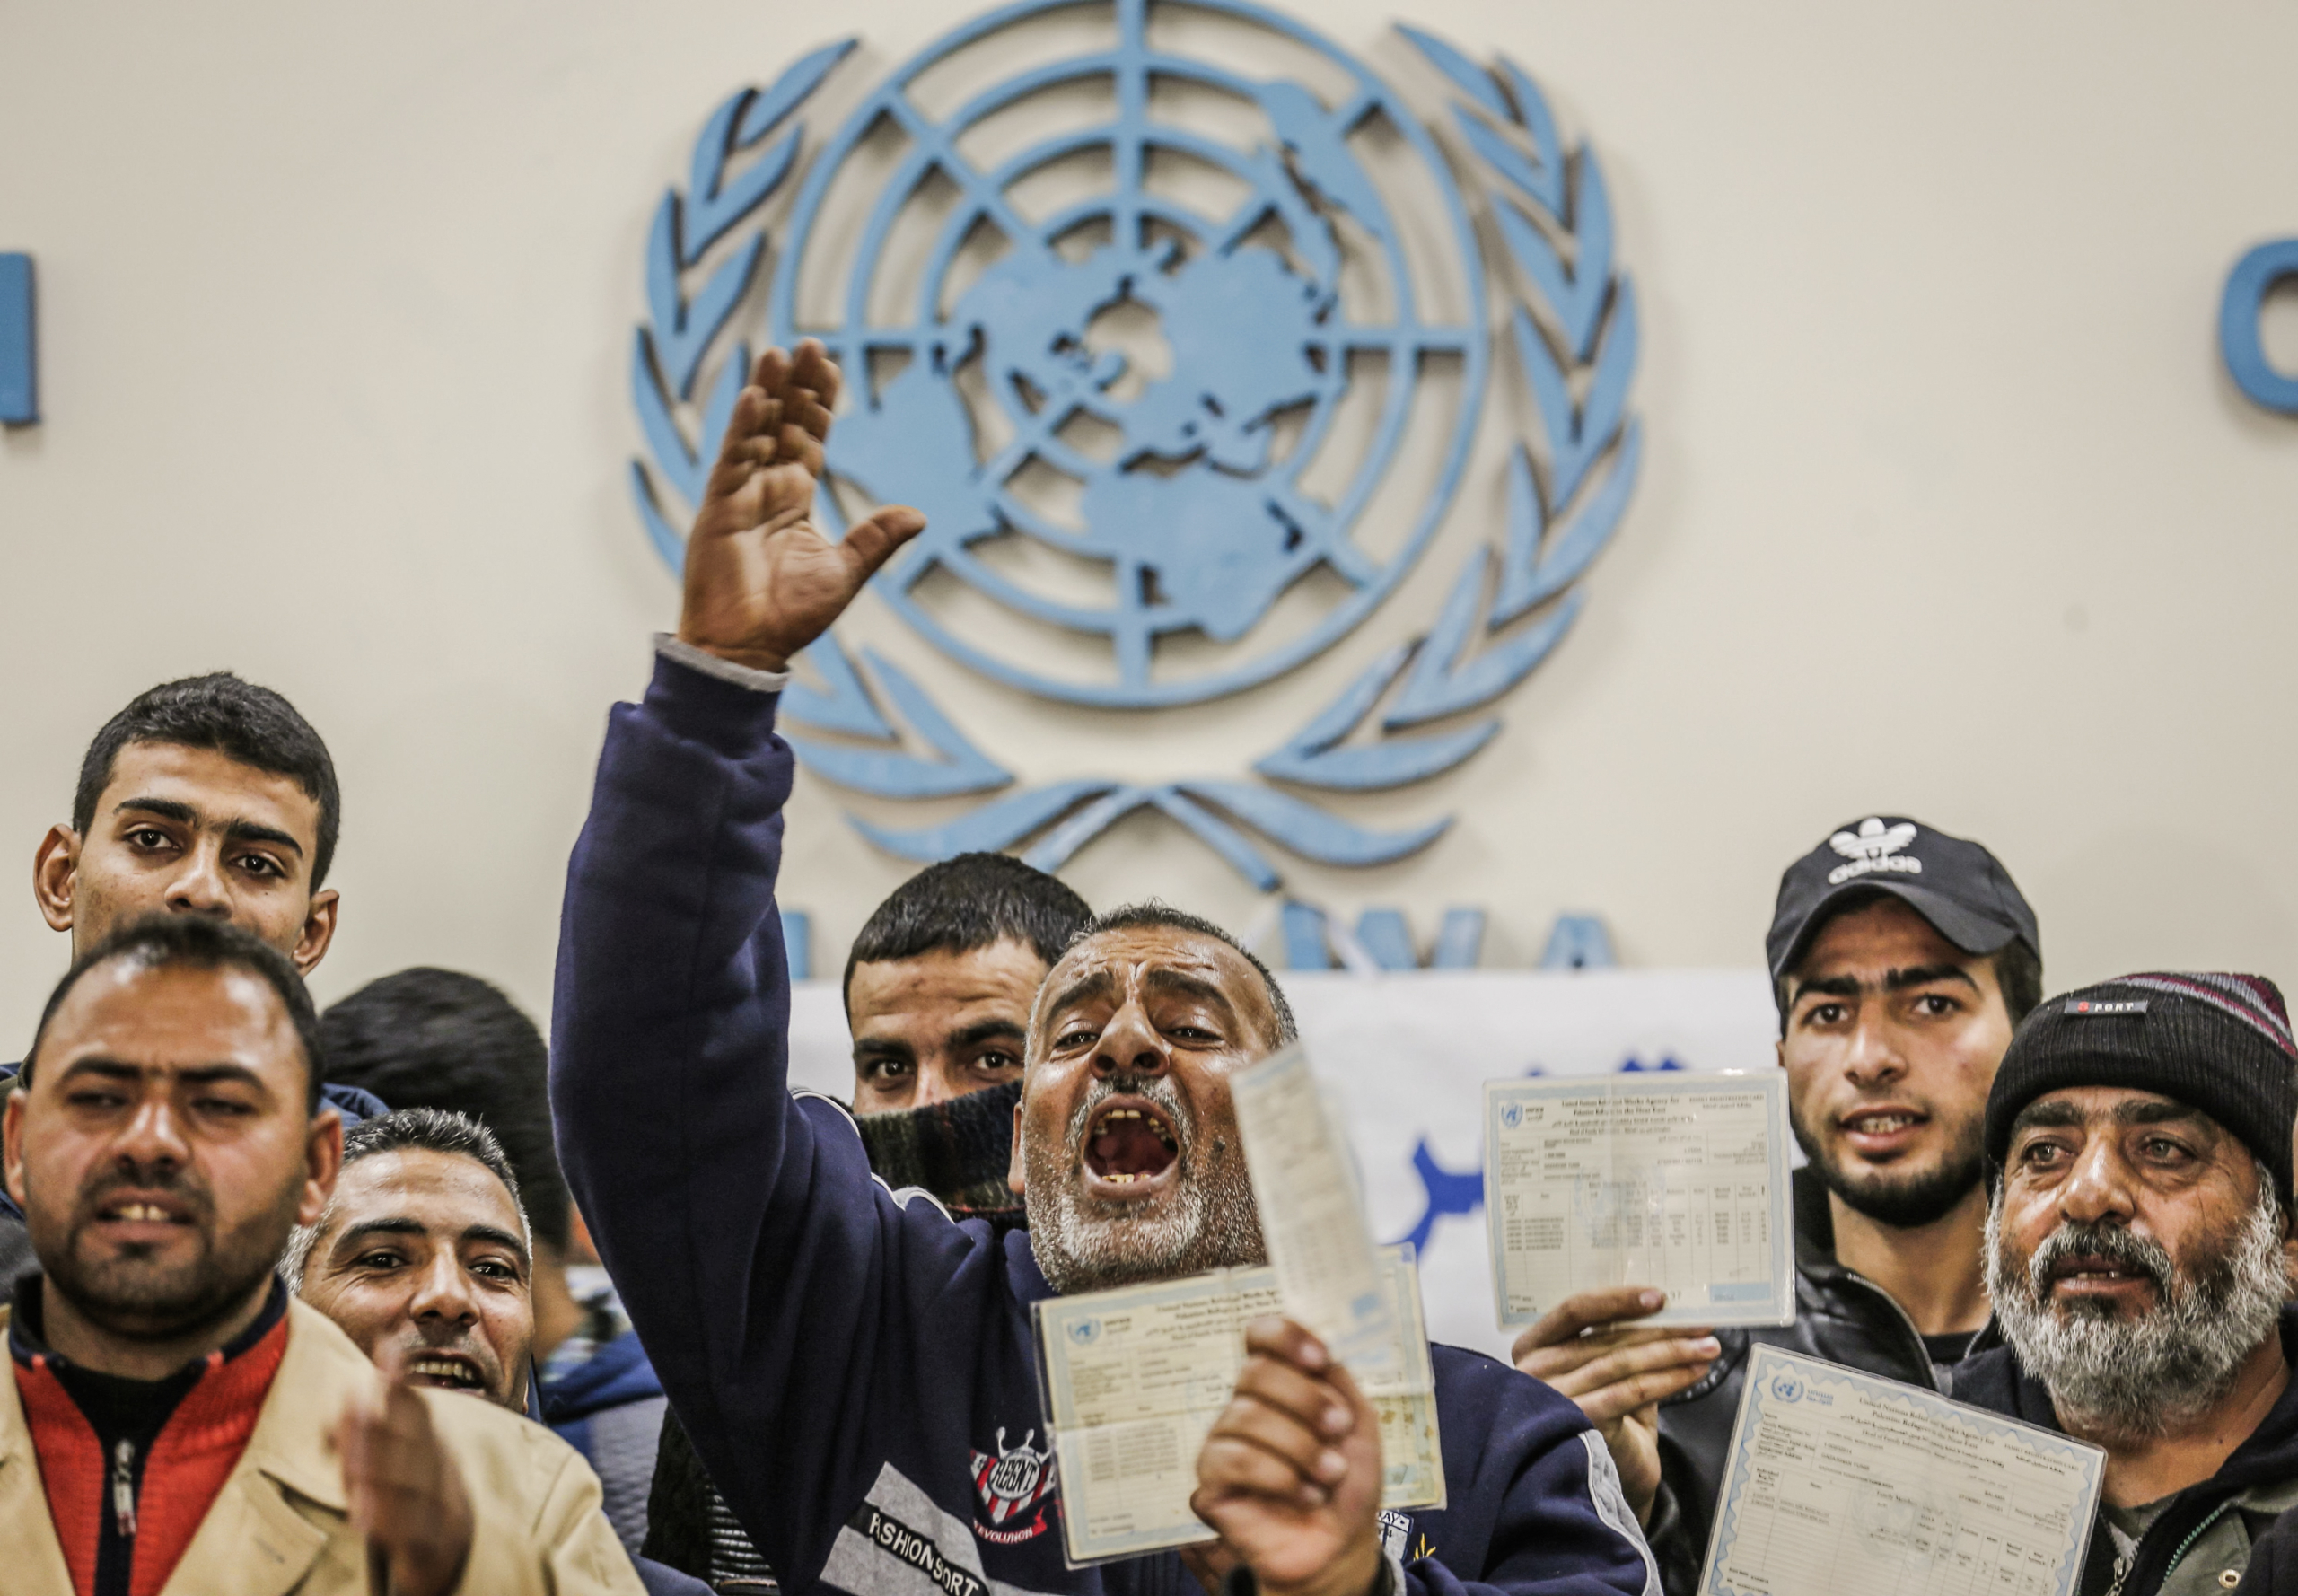 Một người đàn ông cầm thẻ tị nạn đang hô khẩu hiệu trong cuộc biểu tình kêu gọi Cơ quan Liên Hiệp Quốc về Cứu trợ và Việc làm cho Người tị nạn Palestine trả tiền cho người Palestine để sửa chữa nhà cửa của họ, bị hư hại trong cuộc xung đột Israel-Gaza năm 2014, tại một phòng khám của UNRWA ở phía nam Dải Gaza vào ngày 09/12/2019. (Ảnh: Said Khatib/AFP cho biết qua Getty Images)